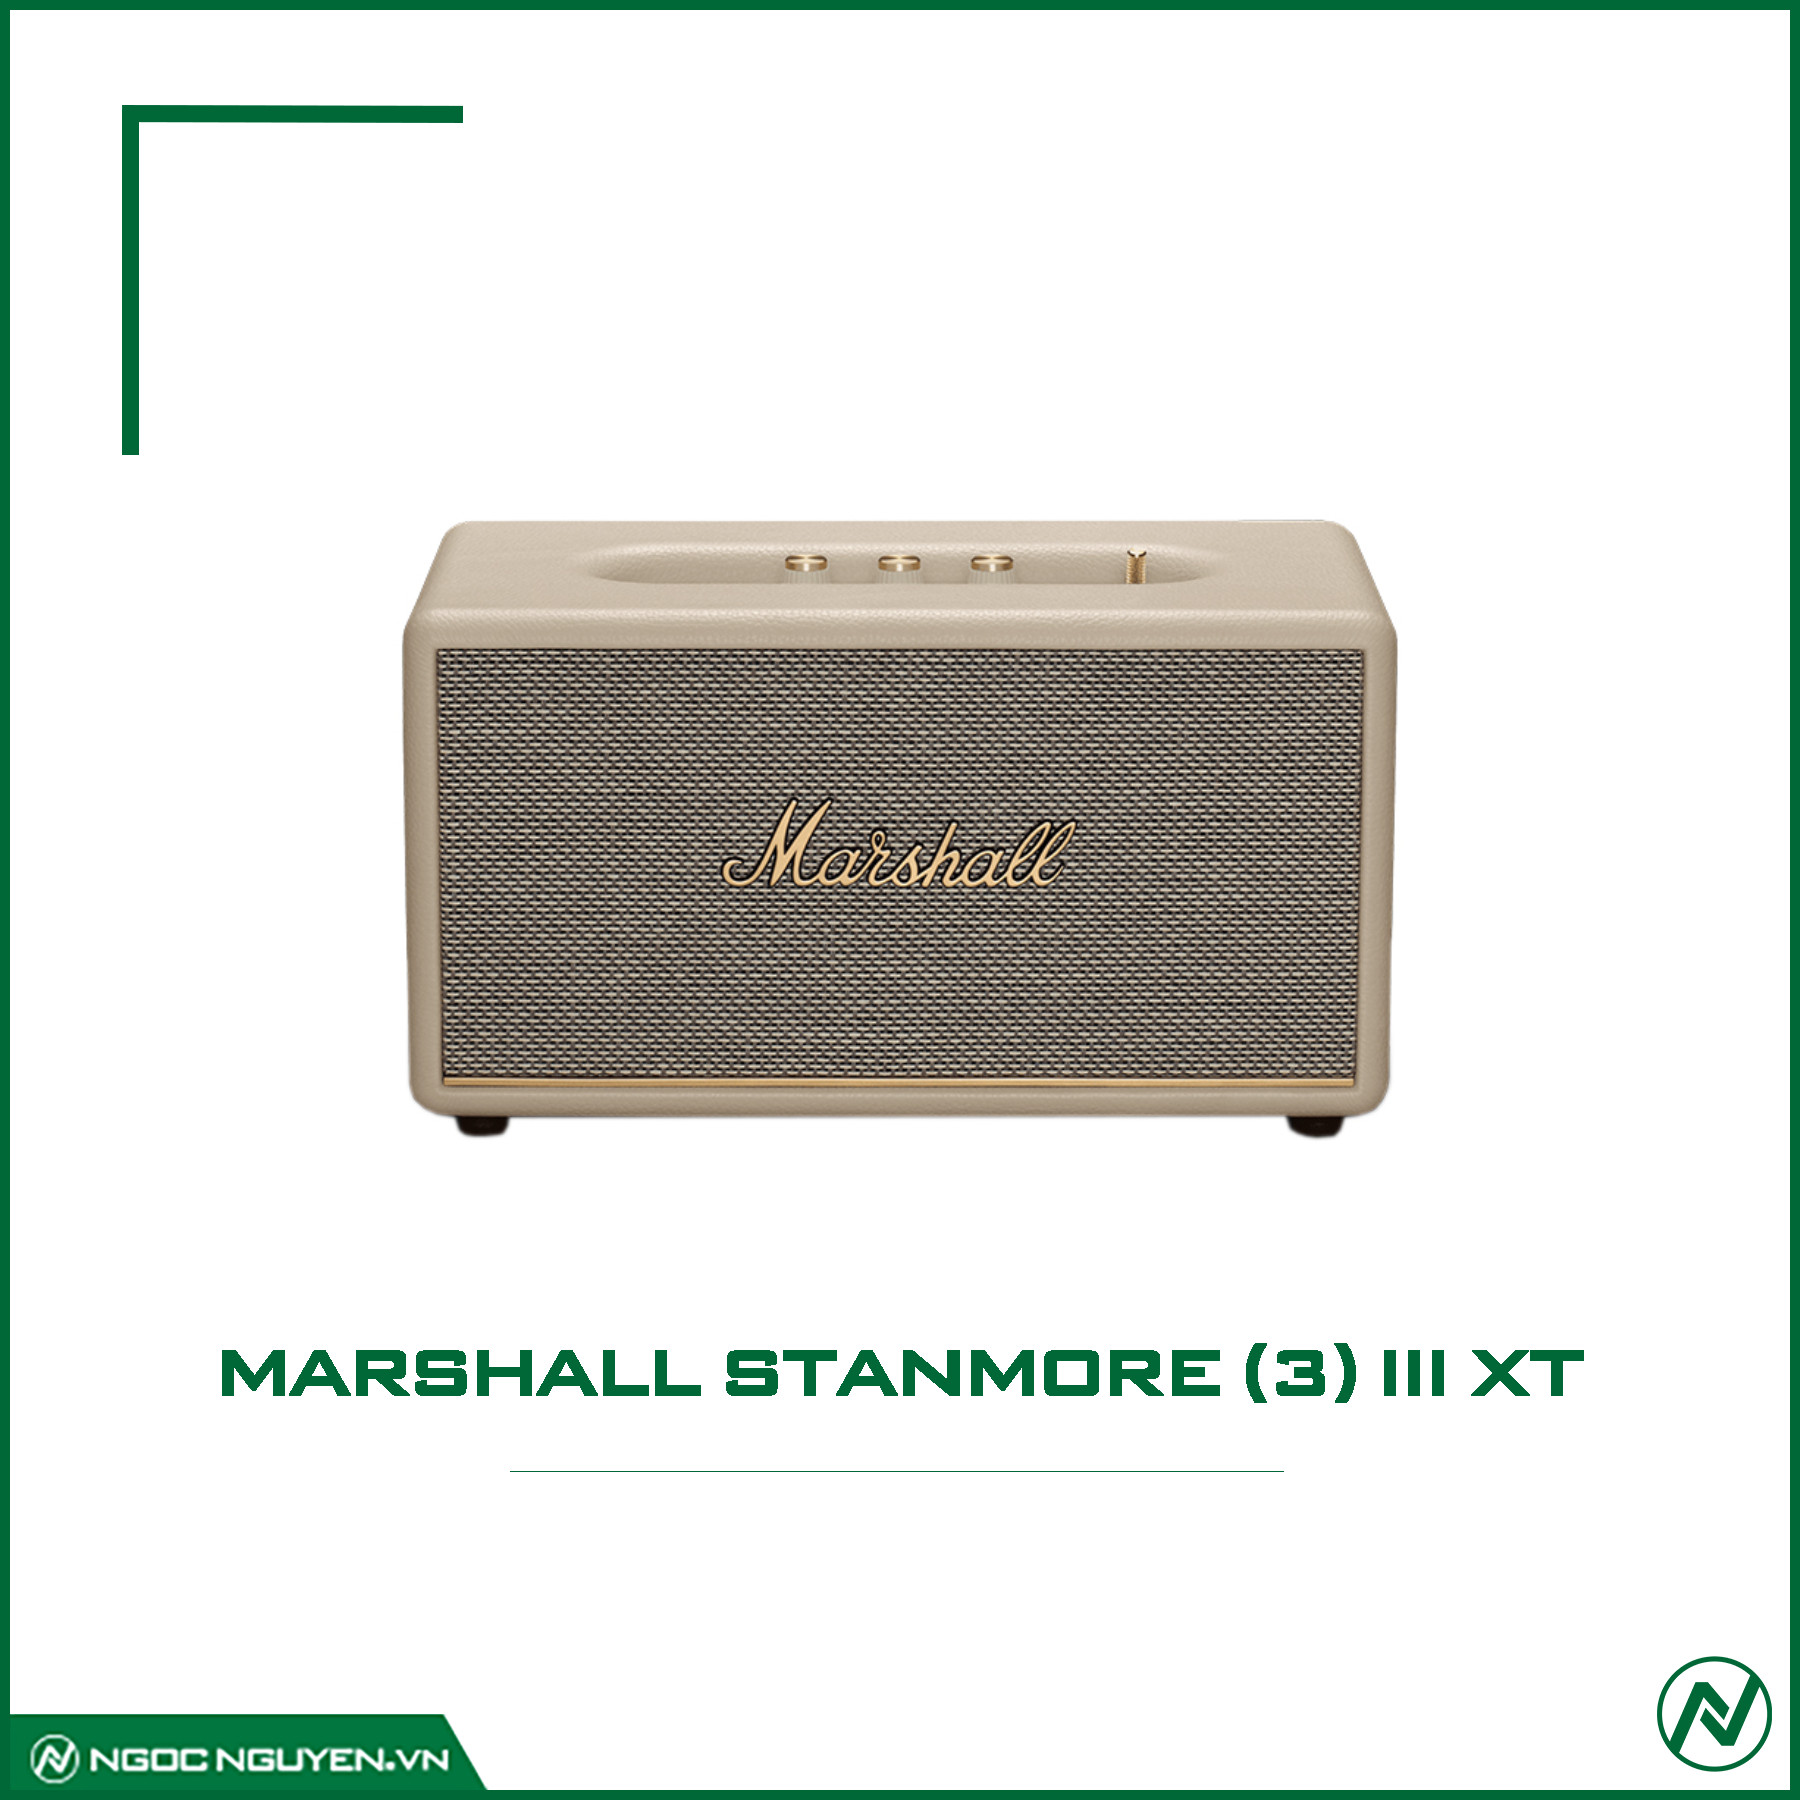 Loa Marshall Stanmore (3) III XT